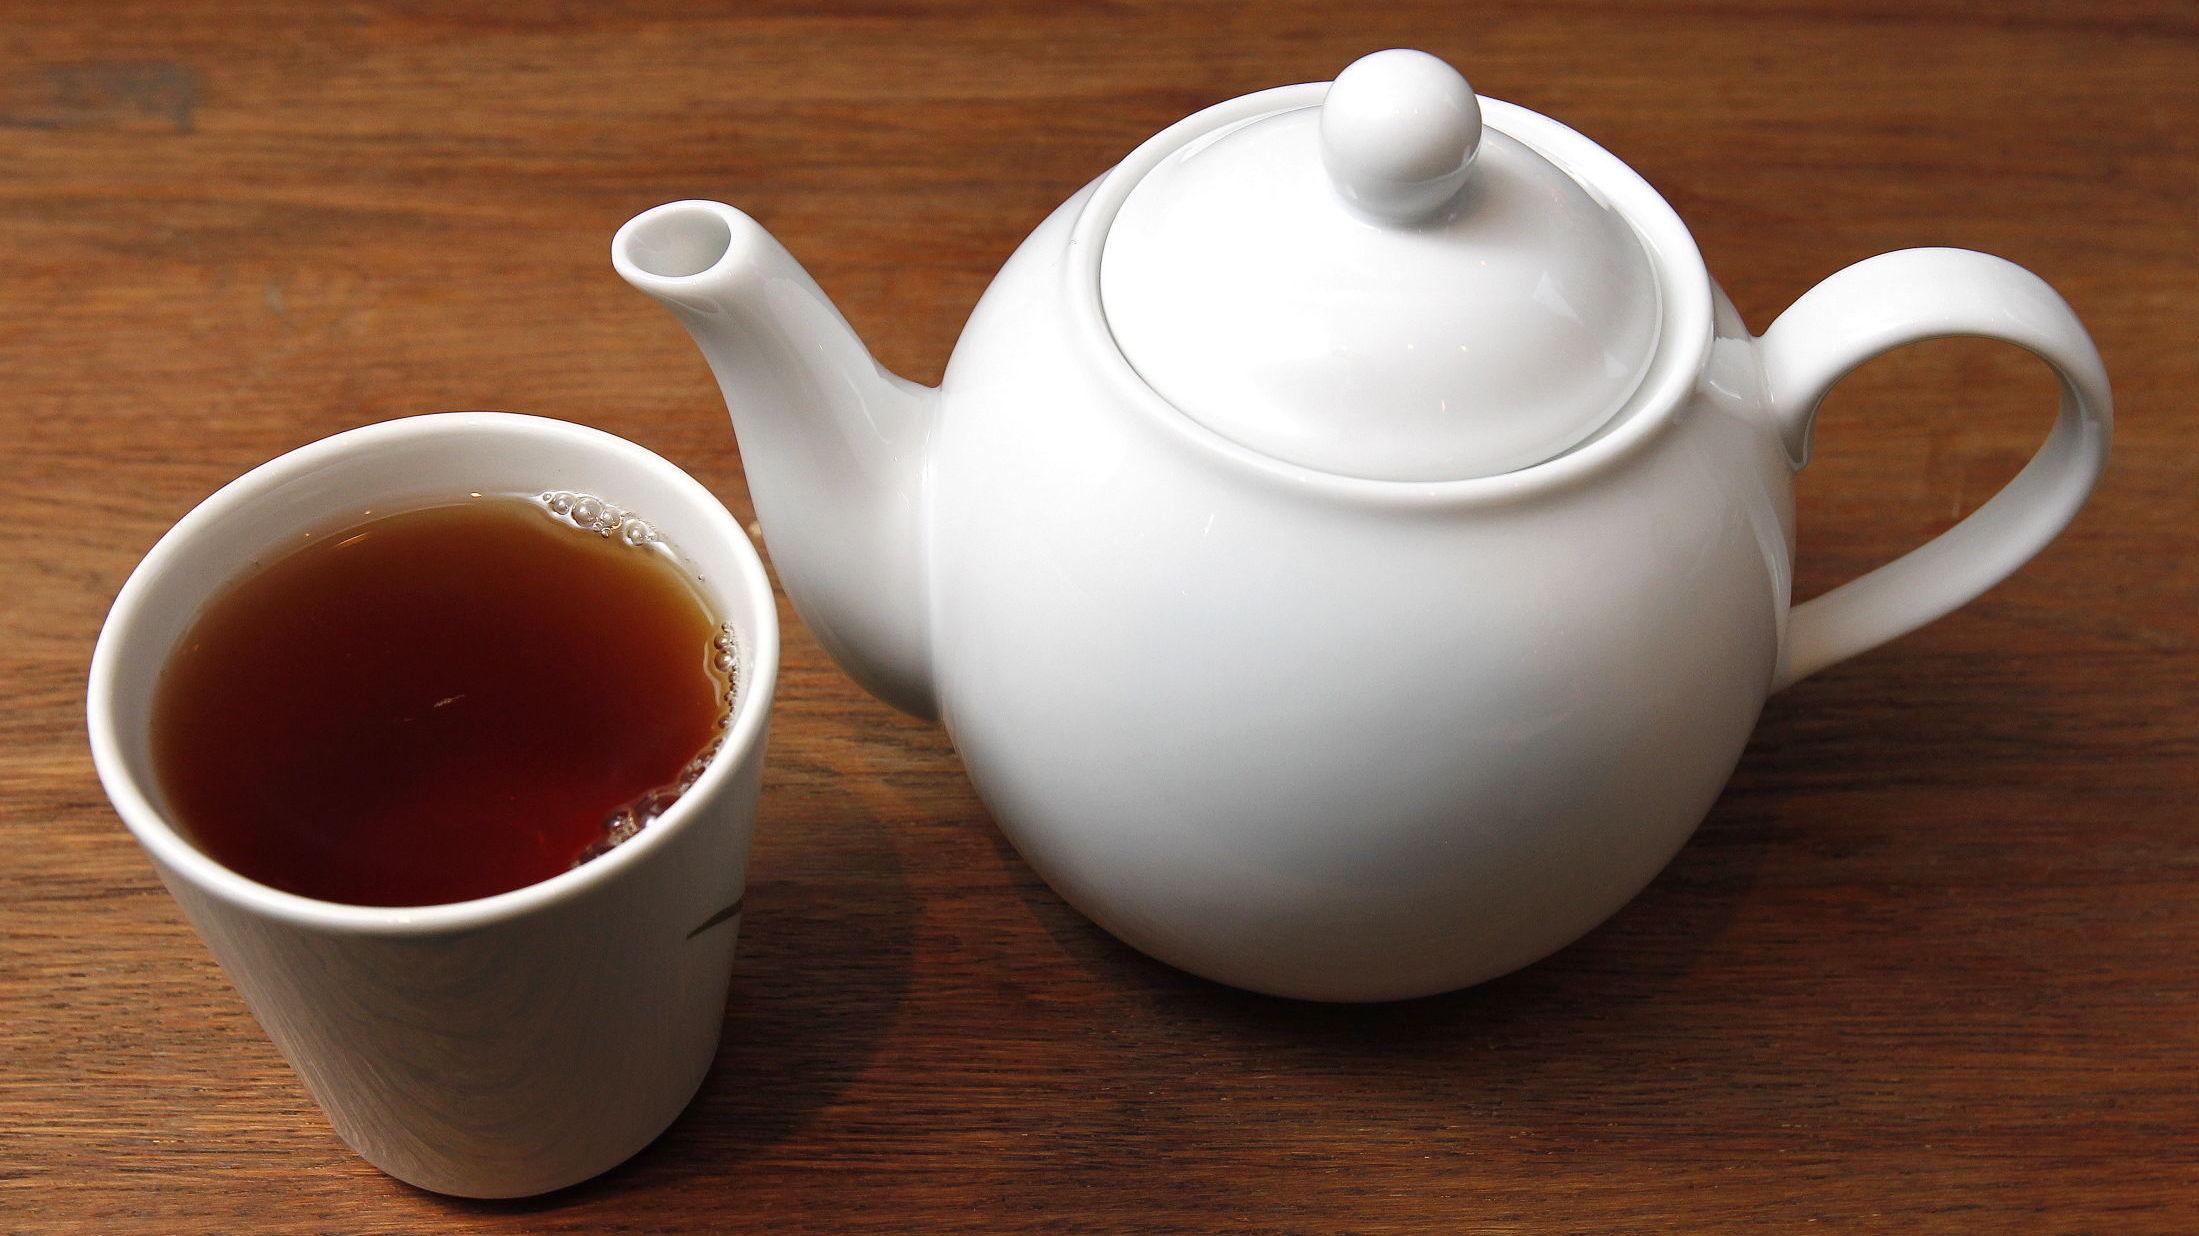 VARMT OG GODT FOR DEG: Ikke bare kan du varme deg på en god kopp te, men det er faktisk også bra for helsa. Brygg i vei! Foto: Trond Solberg